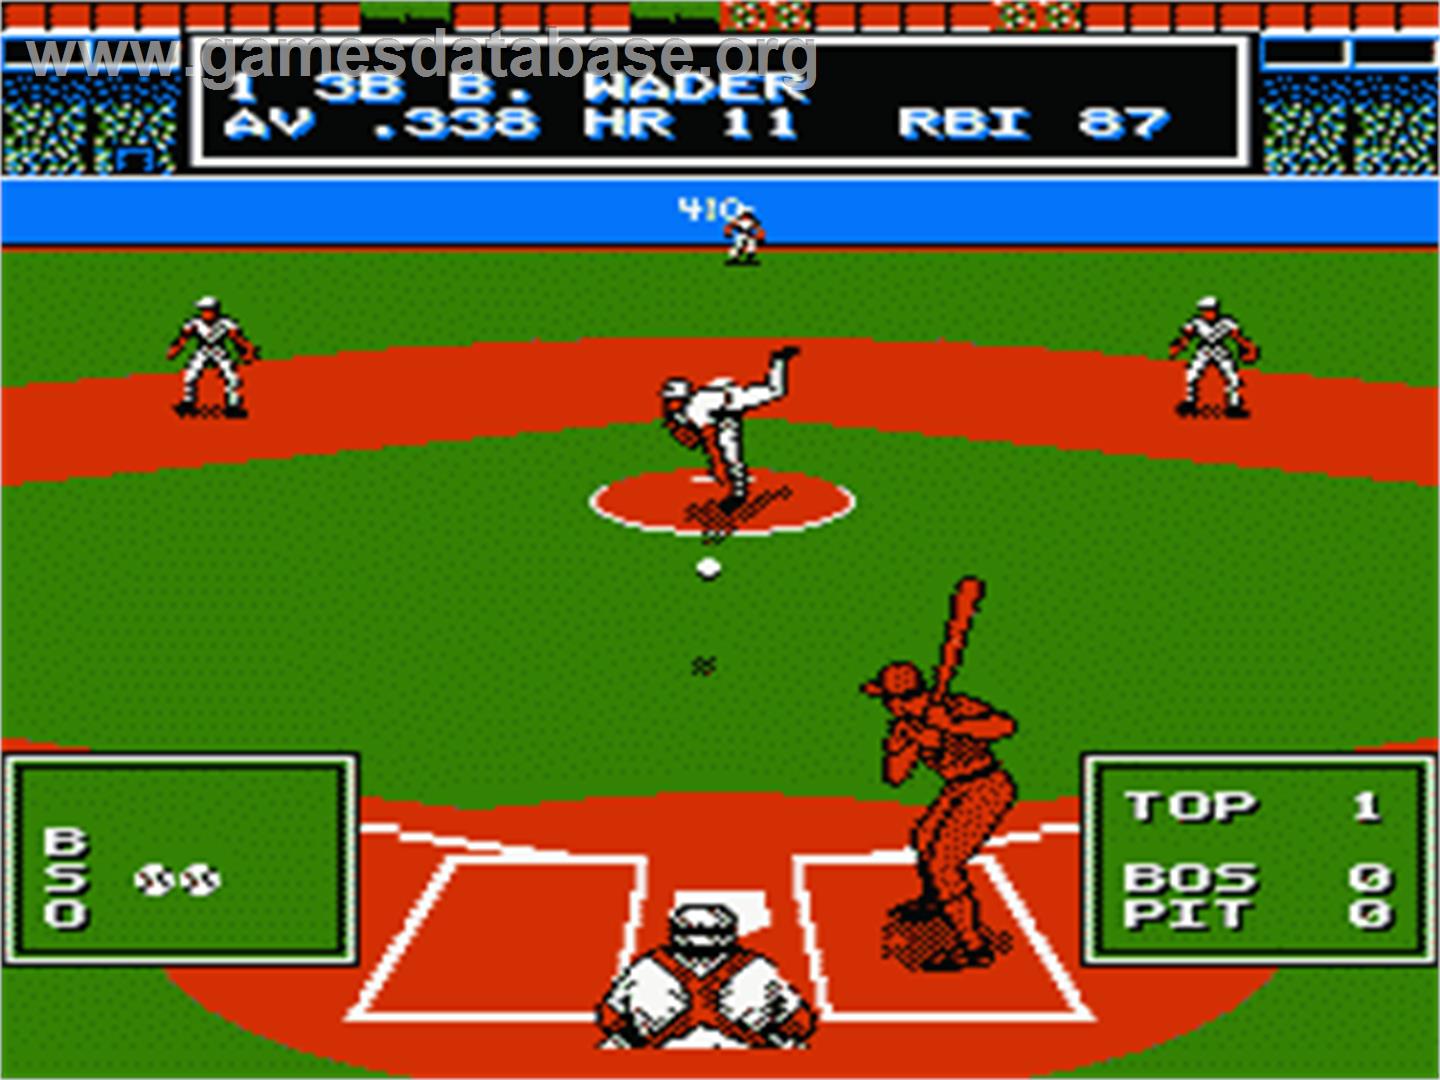 Roger Clemens' MVP Baseball - Nintendo NES - Artwork - In Game